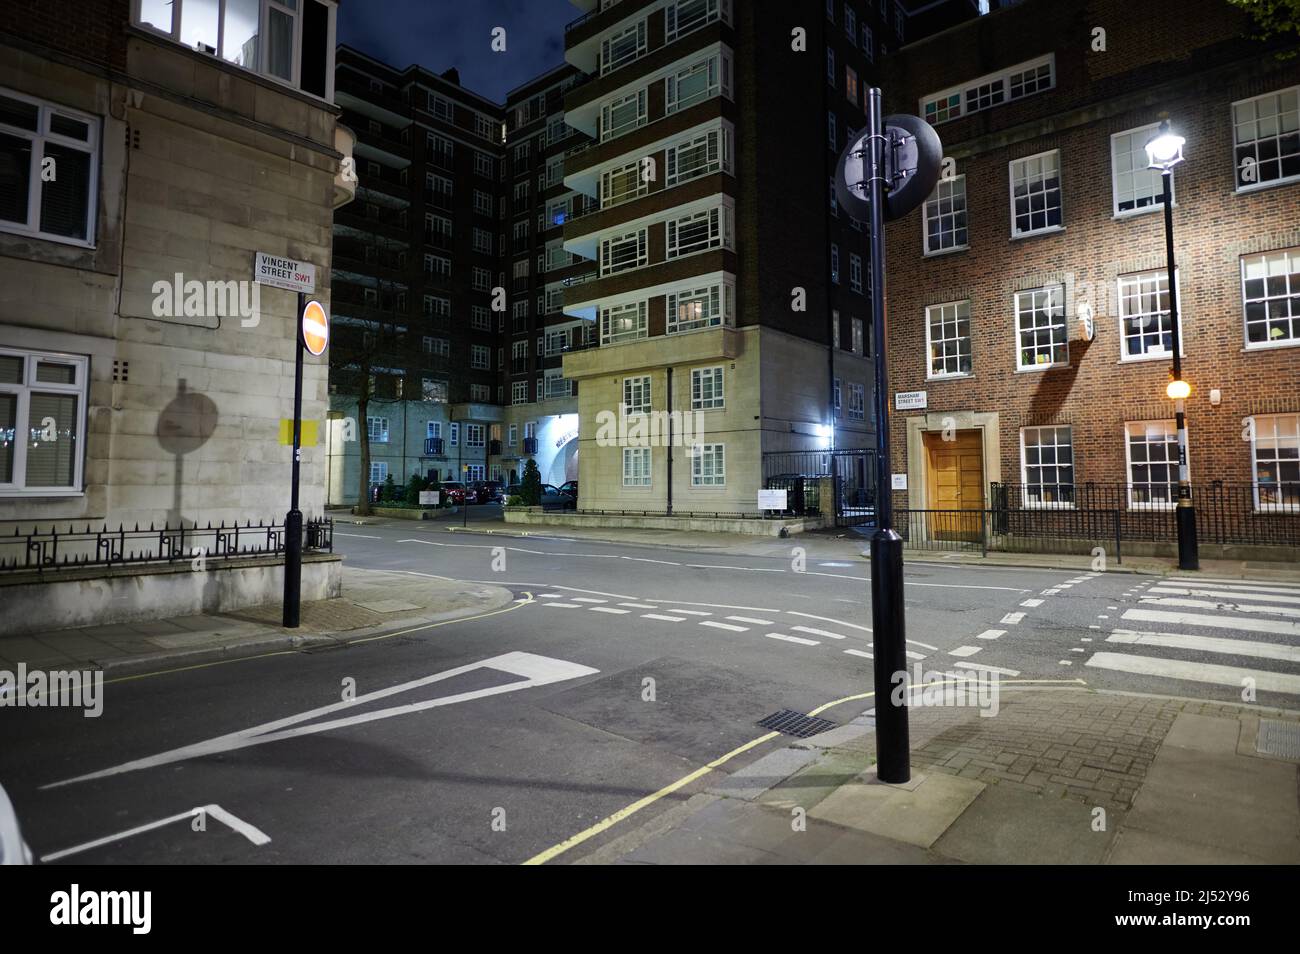 13 avril 2022 - Londonuk : scène de rue à londres de la traversée piétonne zébrée et jonction avec de grands immeubles d'appartements en arrière-plan et pas de peo Banque D'Images